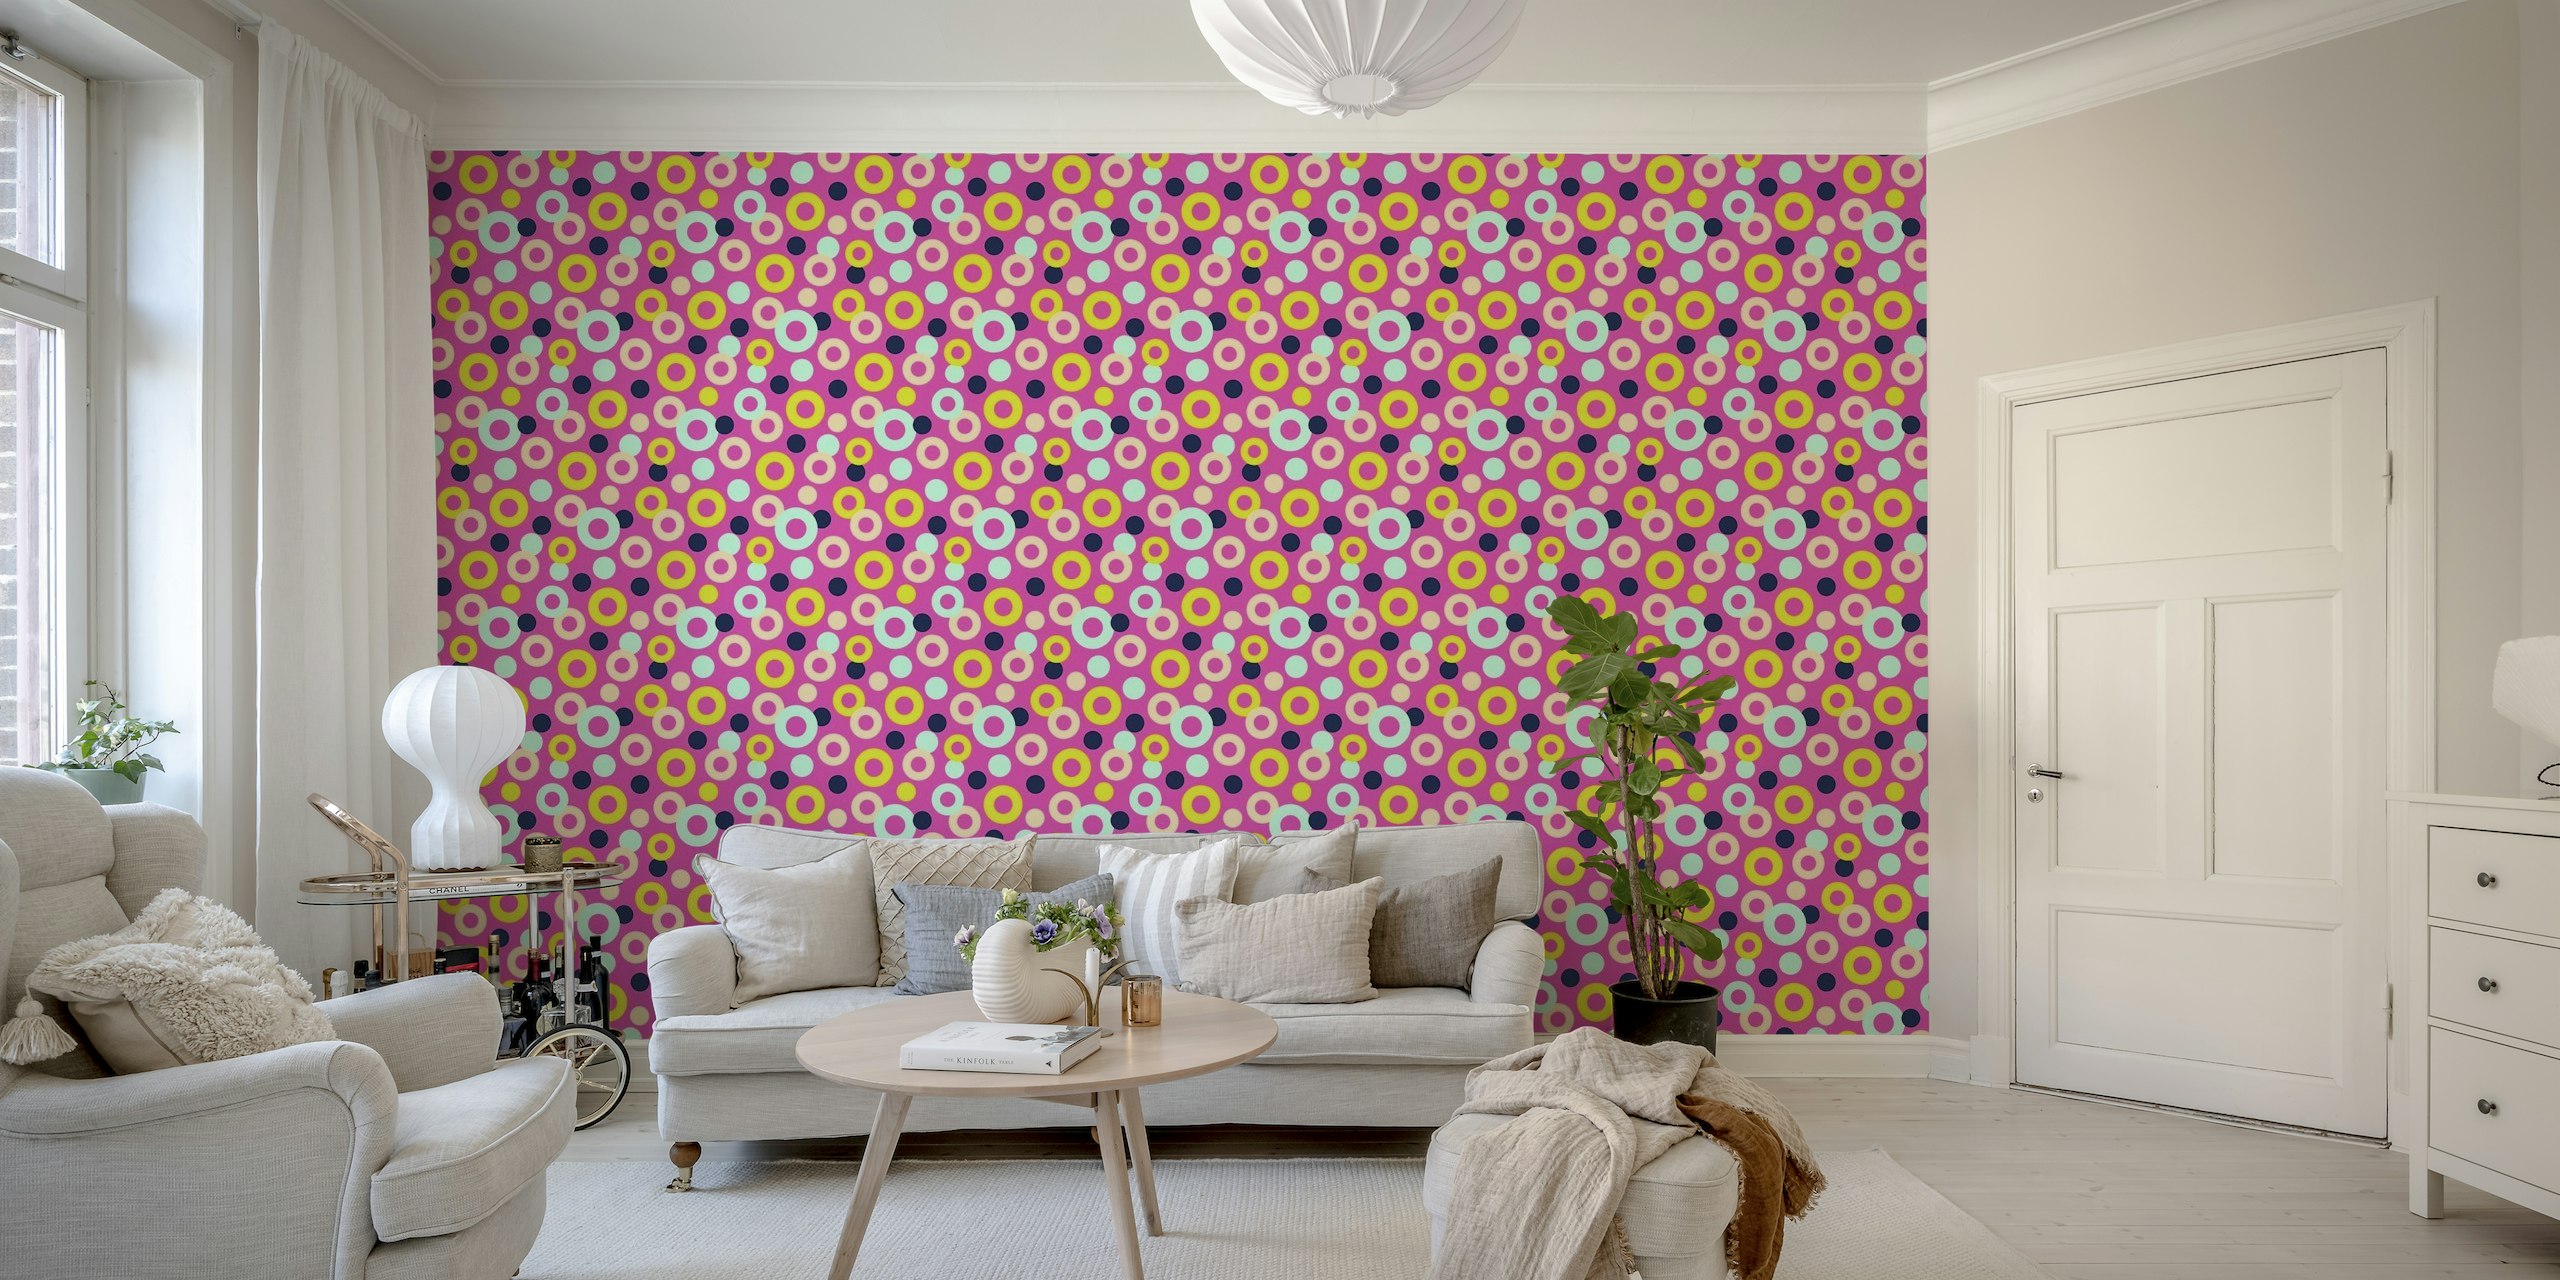 DROPS Lunares Anillos Mural de pared geométrico en rosa intenso con detalles multicolores.